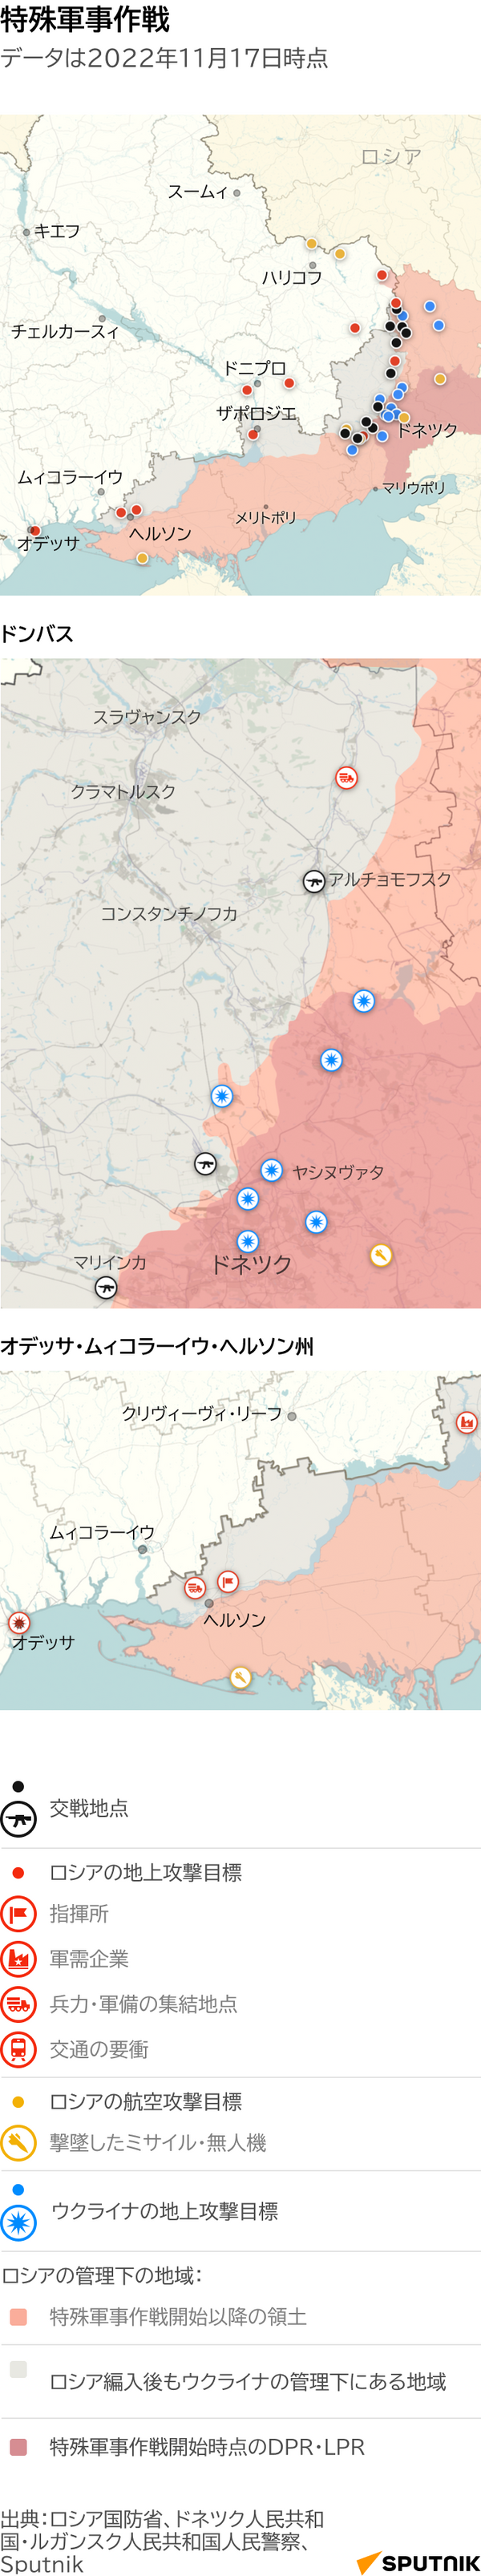 ウクライナにおけるロシア特殊軍事作戦の経過と成果 - Sputnik 日本